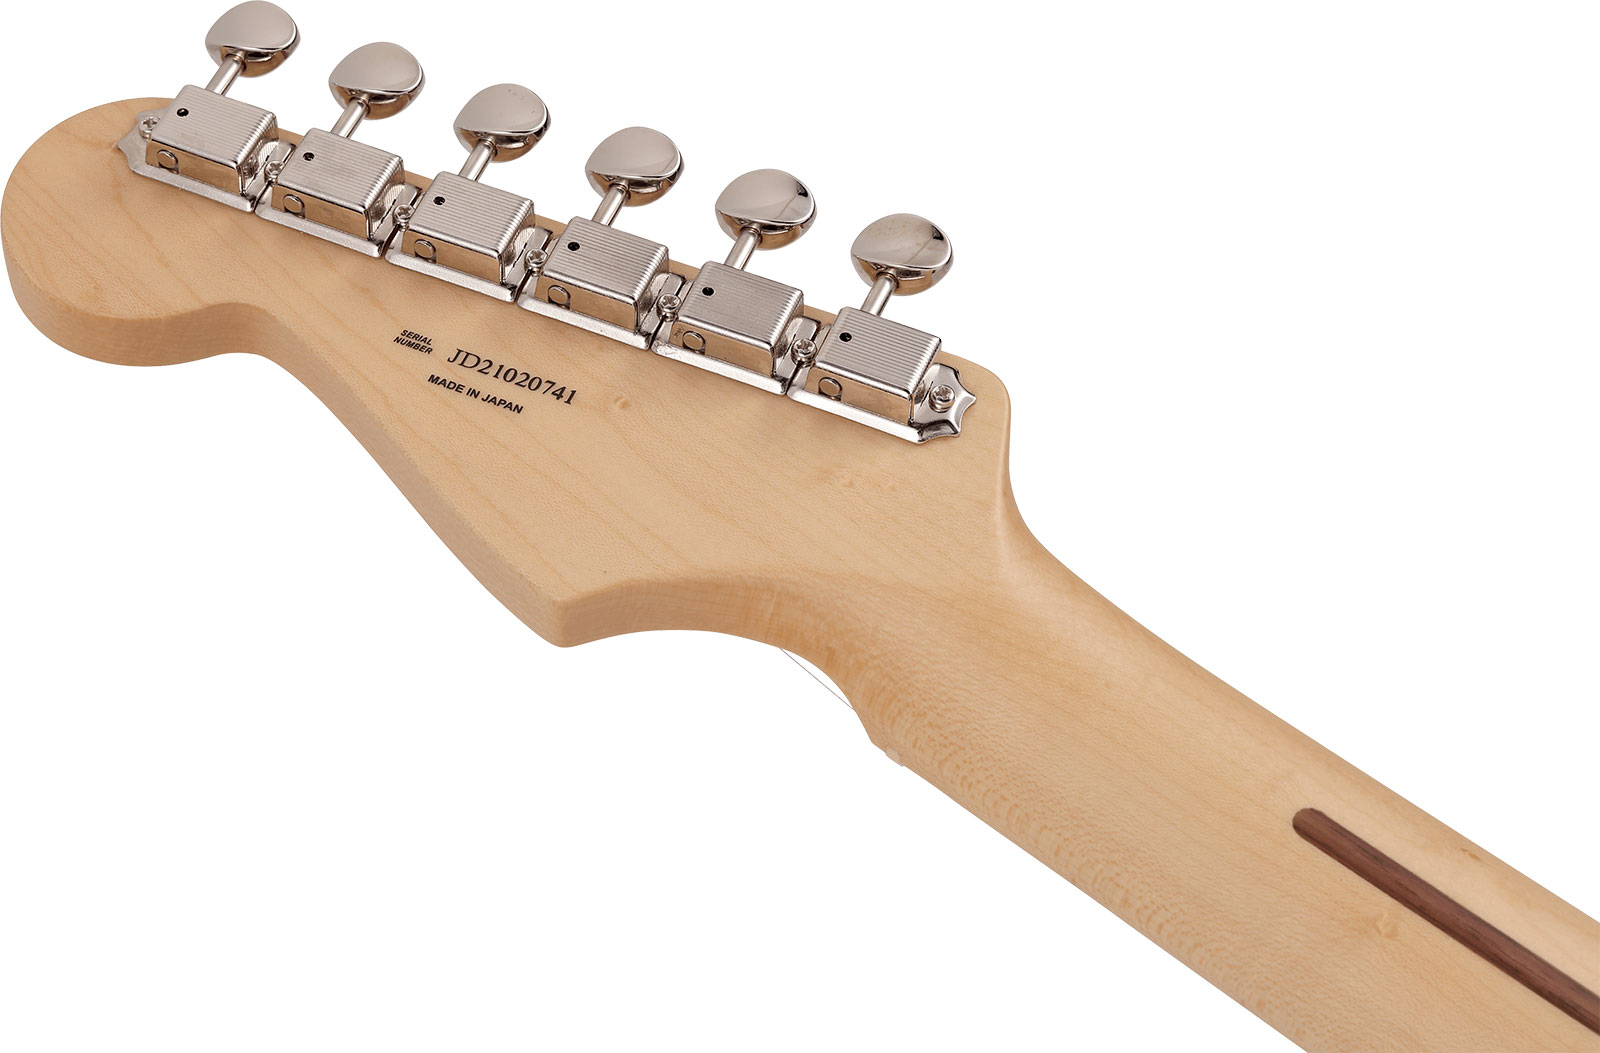 Fender Strat Junior Mij Jap 3s Trem Rw - Satin Shell Pink - E-Gitarre für Kinder - Variation 3